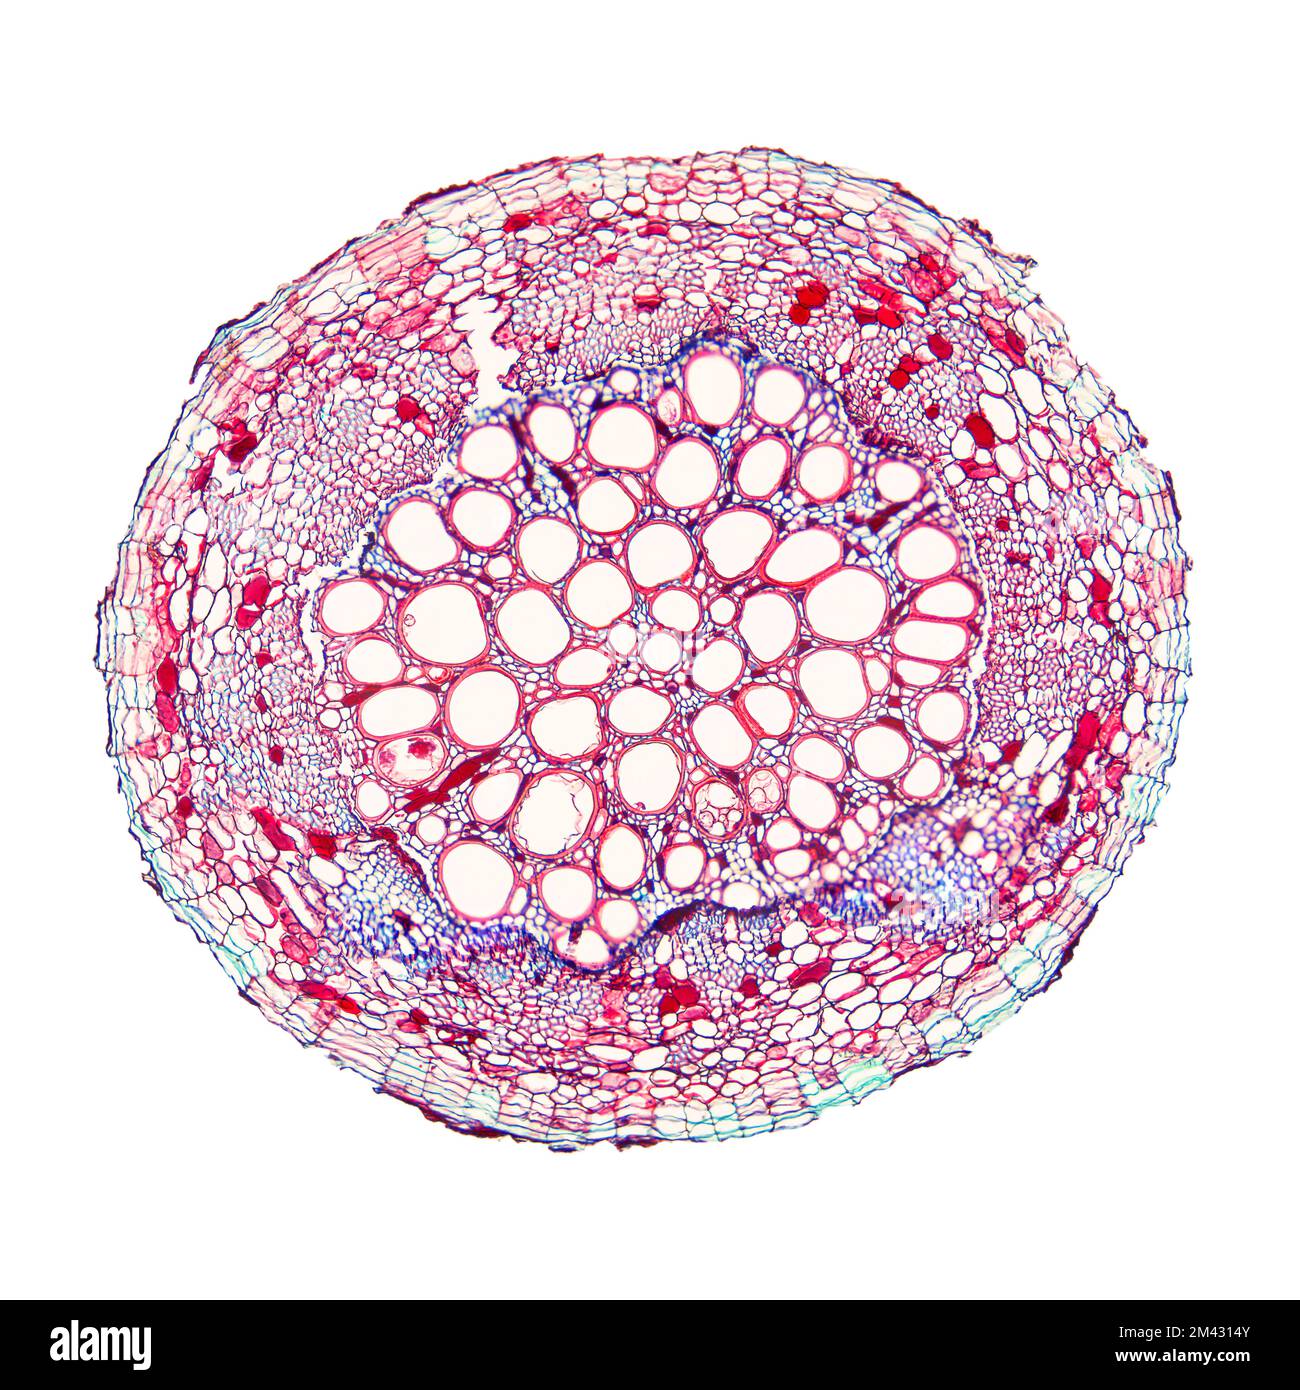 Baumwollpflanzenwurzel, unter dem Lichtmikroskop. Querschnitt durch die Wurzel von Gossypium hirsutum, Berggebiet oder auch mexikanischer Baumwolle. Stockfoto